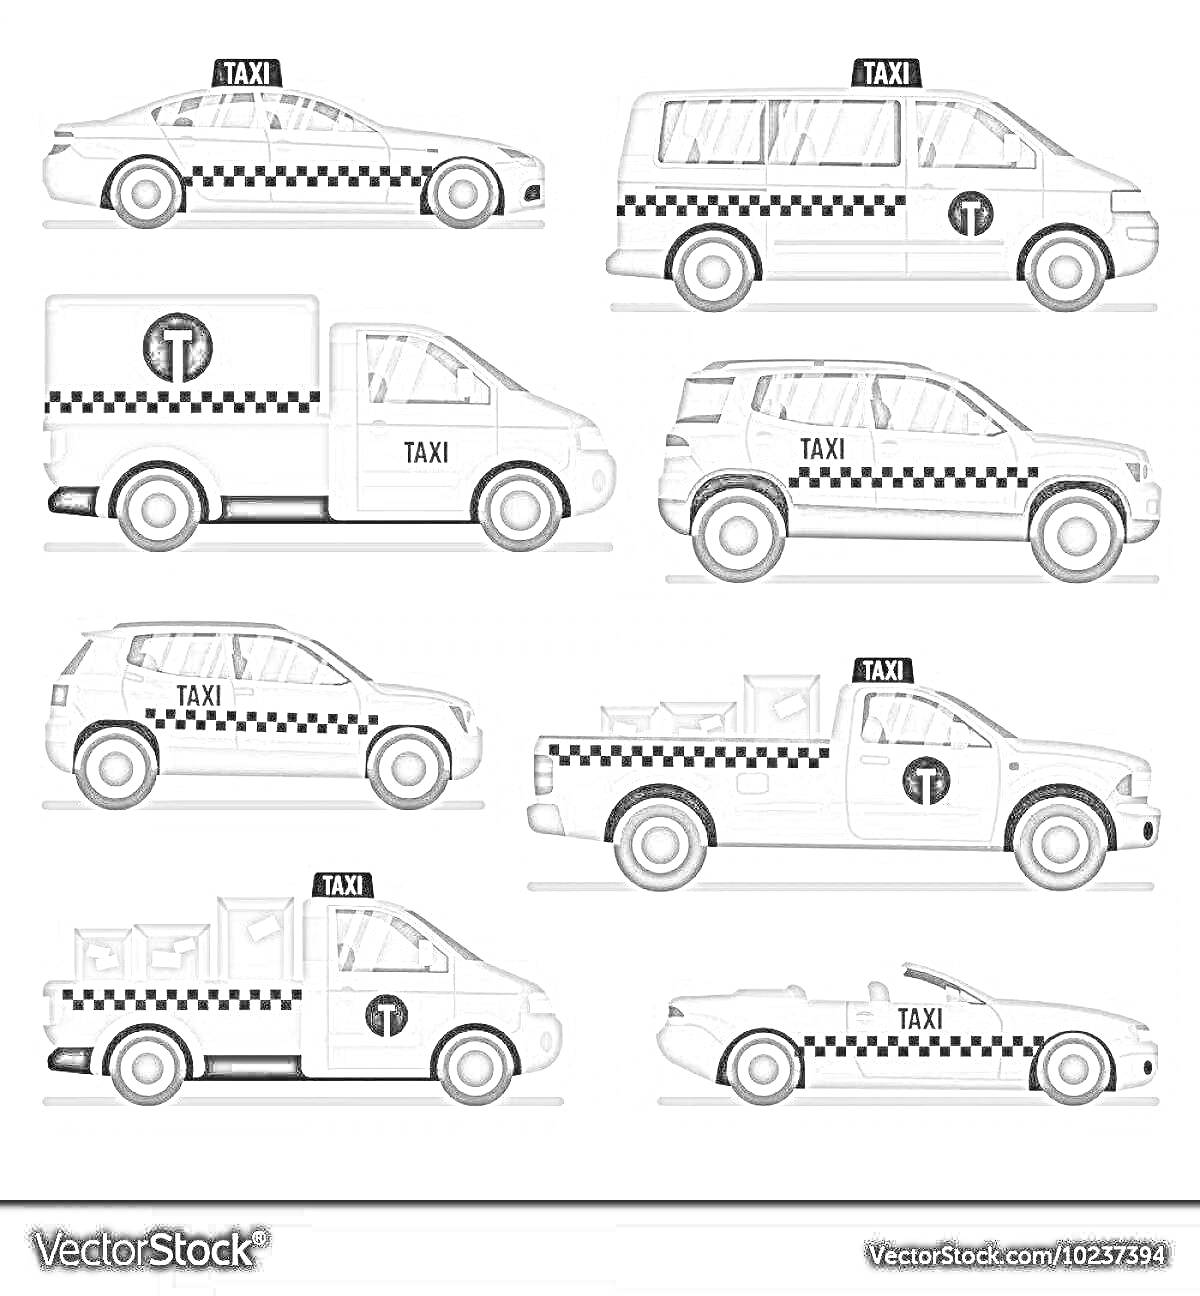 Раскраска Черно-белая раскраска с восьмью типами автомобилей такси — седан, минивэн, фургон, внедорожник, пикап и кабриолет с различными цветами и деталями